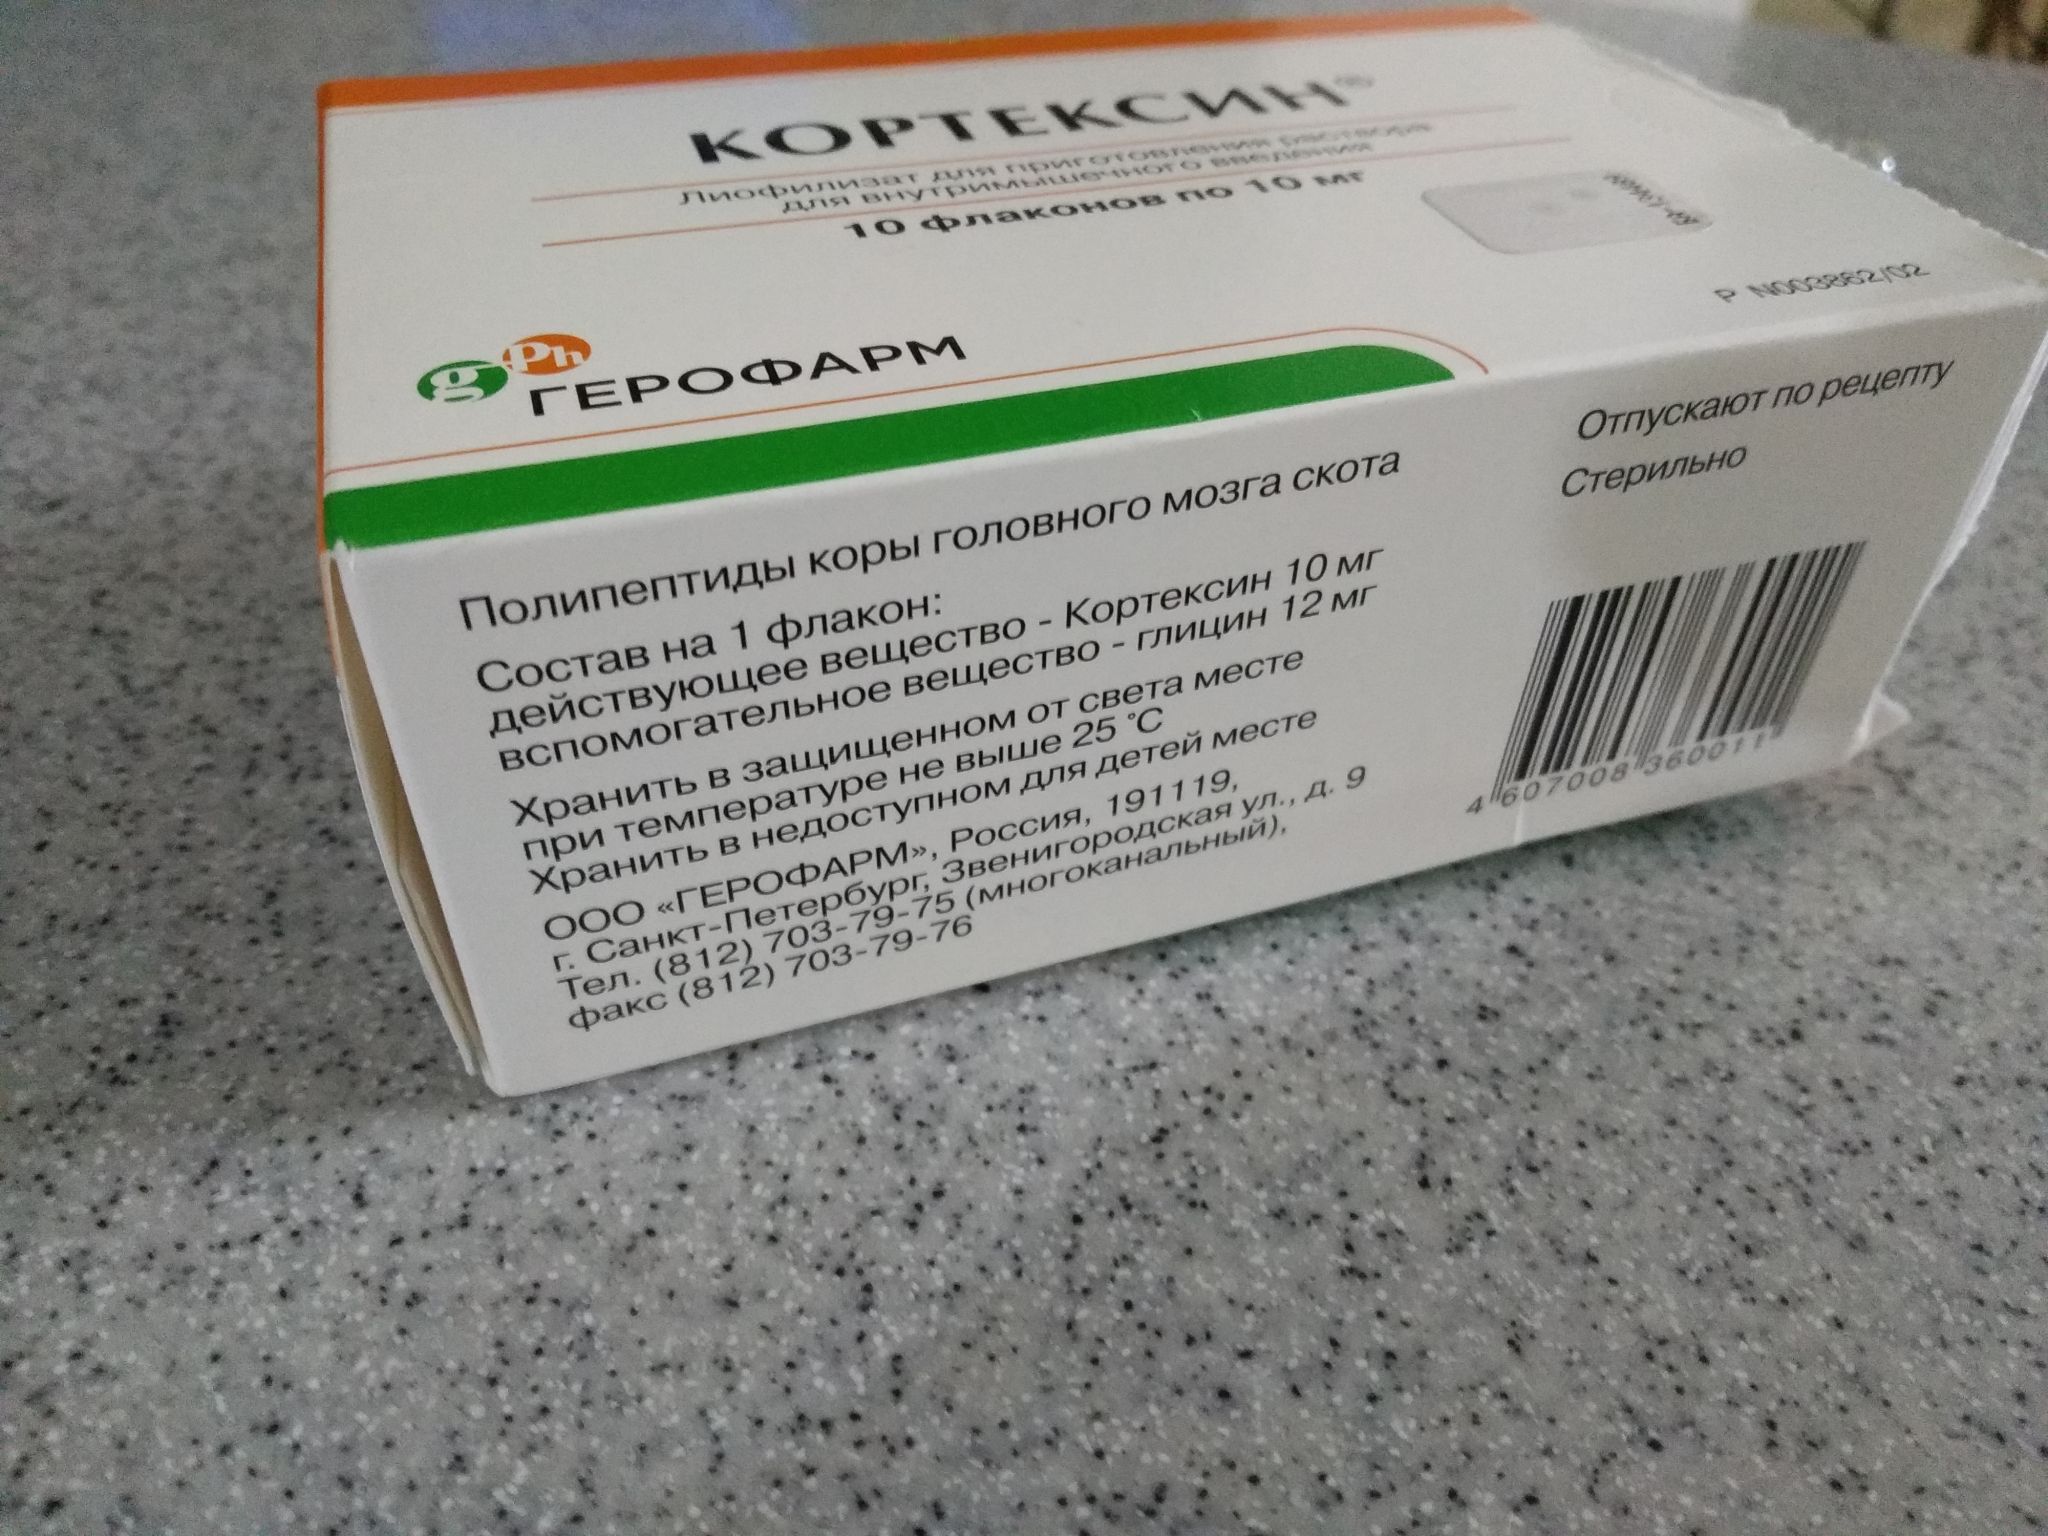 Уколов кортексин 10 мг инструкция